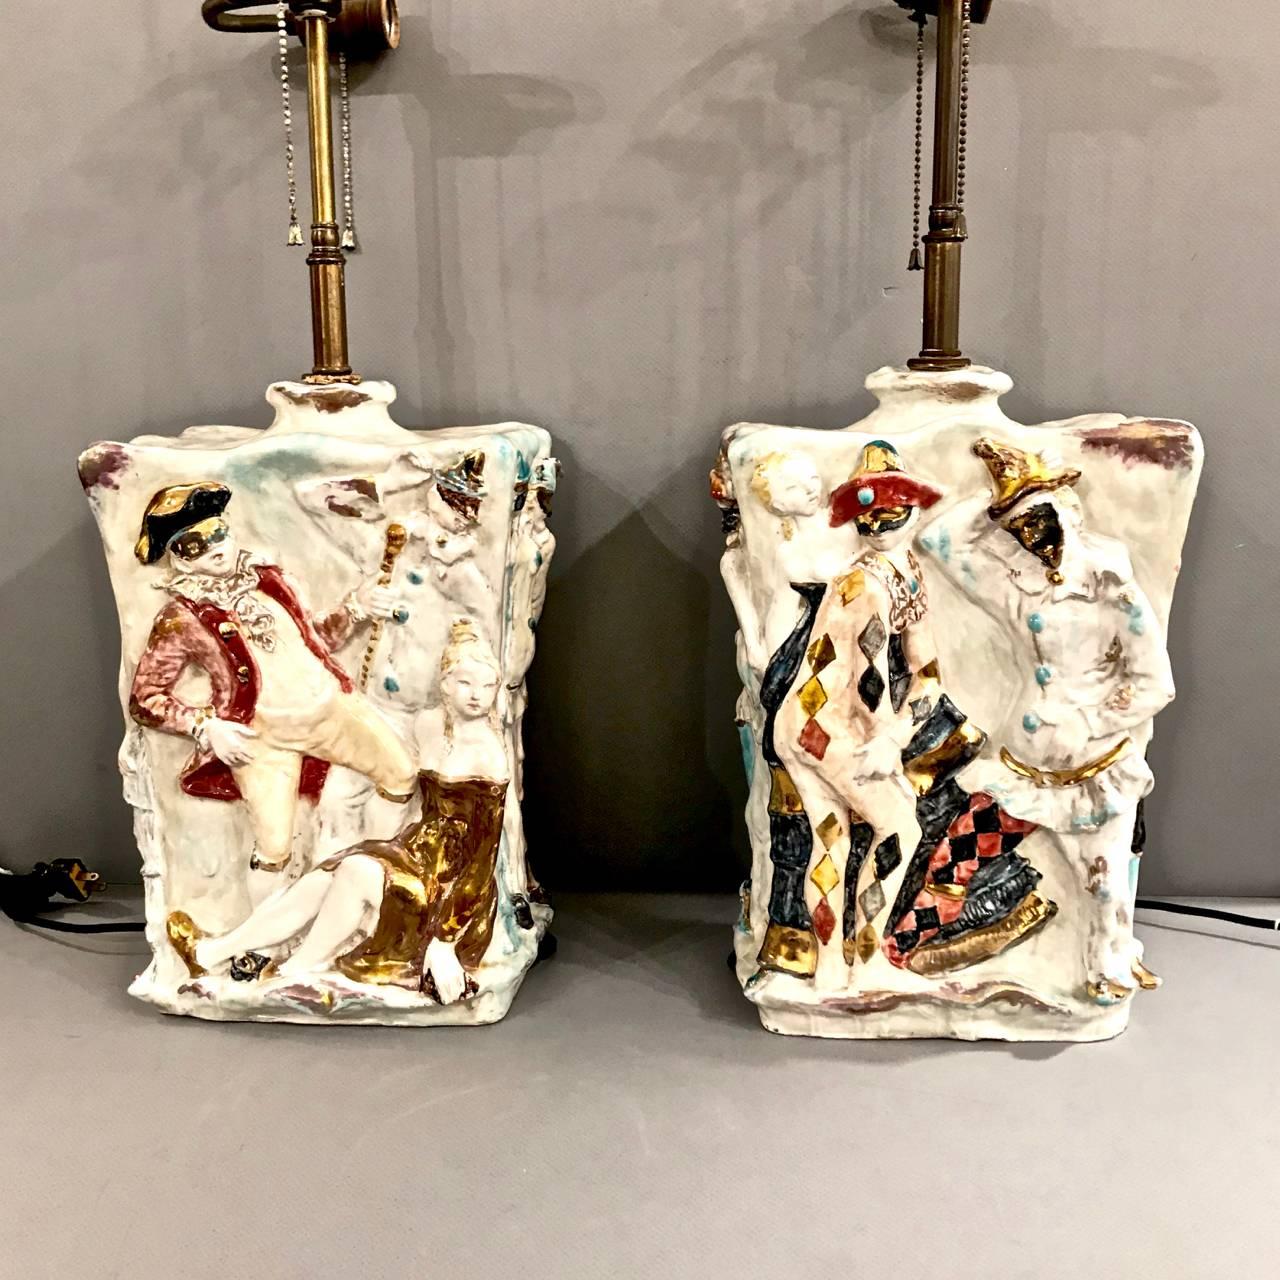 Dies ist ein hervorragendes Set italienischer Keramiklampen aus der Mitte des 20. Jahrhunderts von dem bekannten Prof. Eugenio Pattarino. Die Lampen zeigen Hochrelieffiguren von Carnival Reveller in festlich glasierten Farben.
Eugenia Pattarino